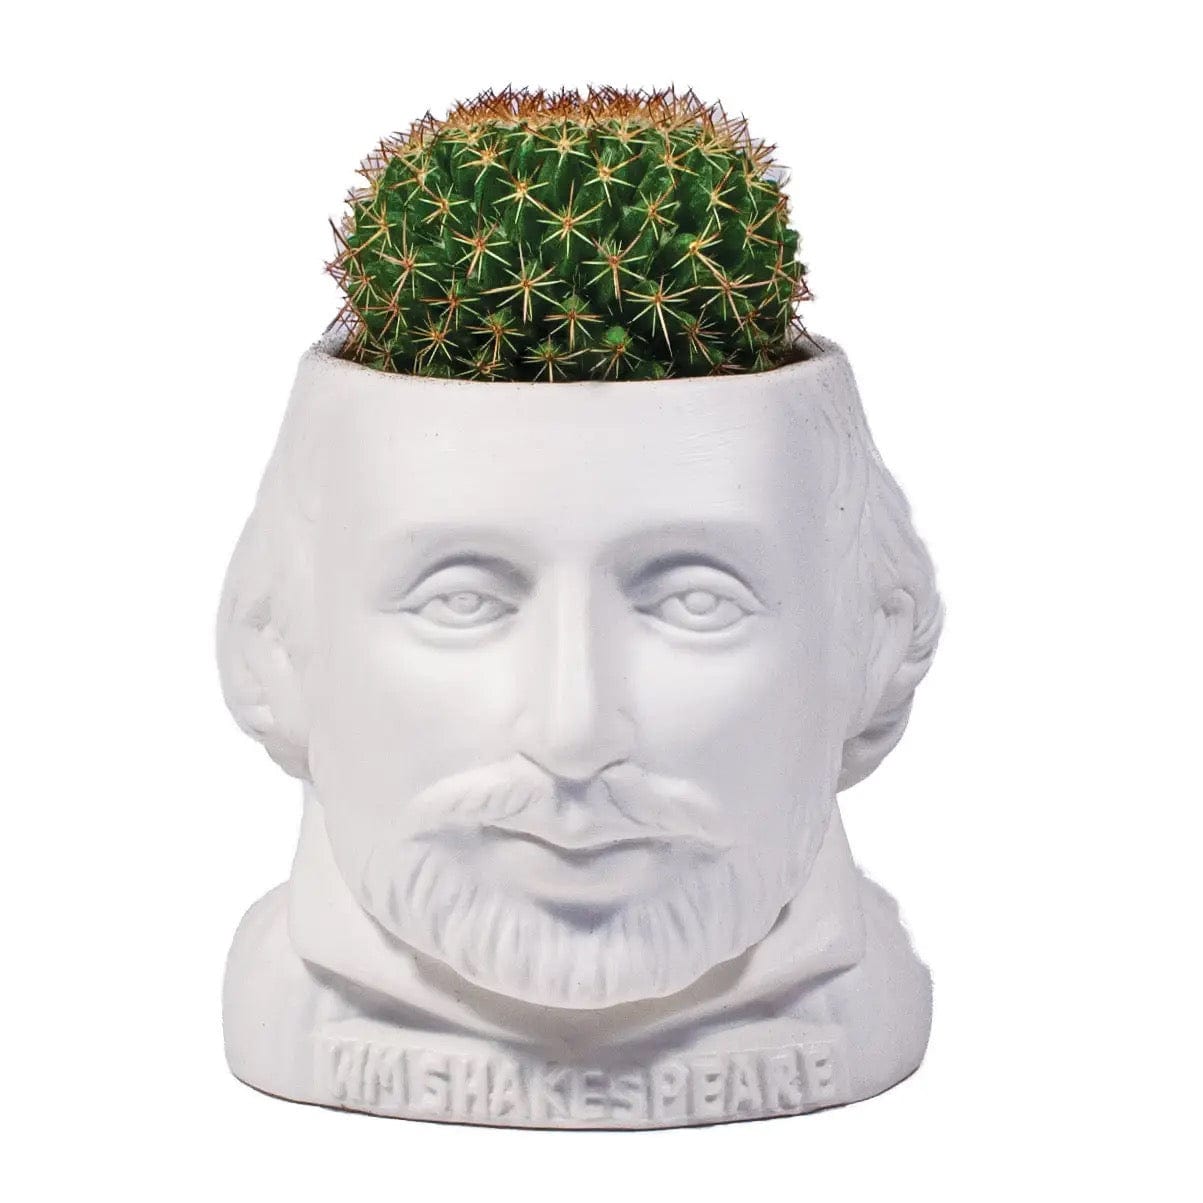 William Shakespeare Plant Pot